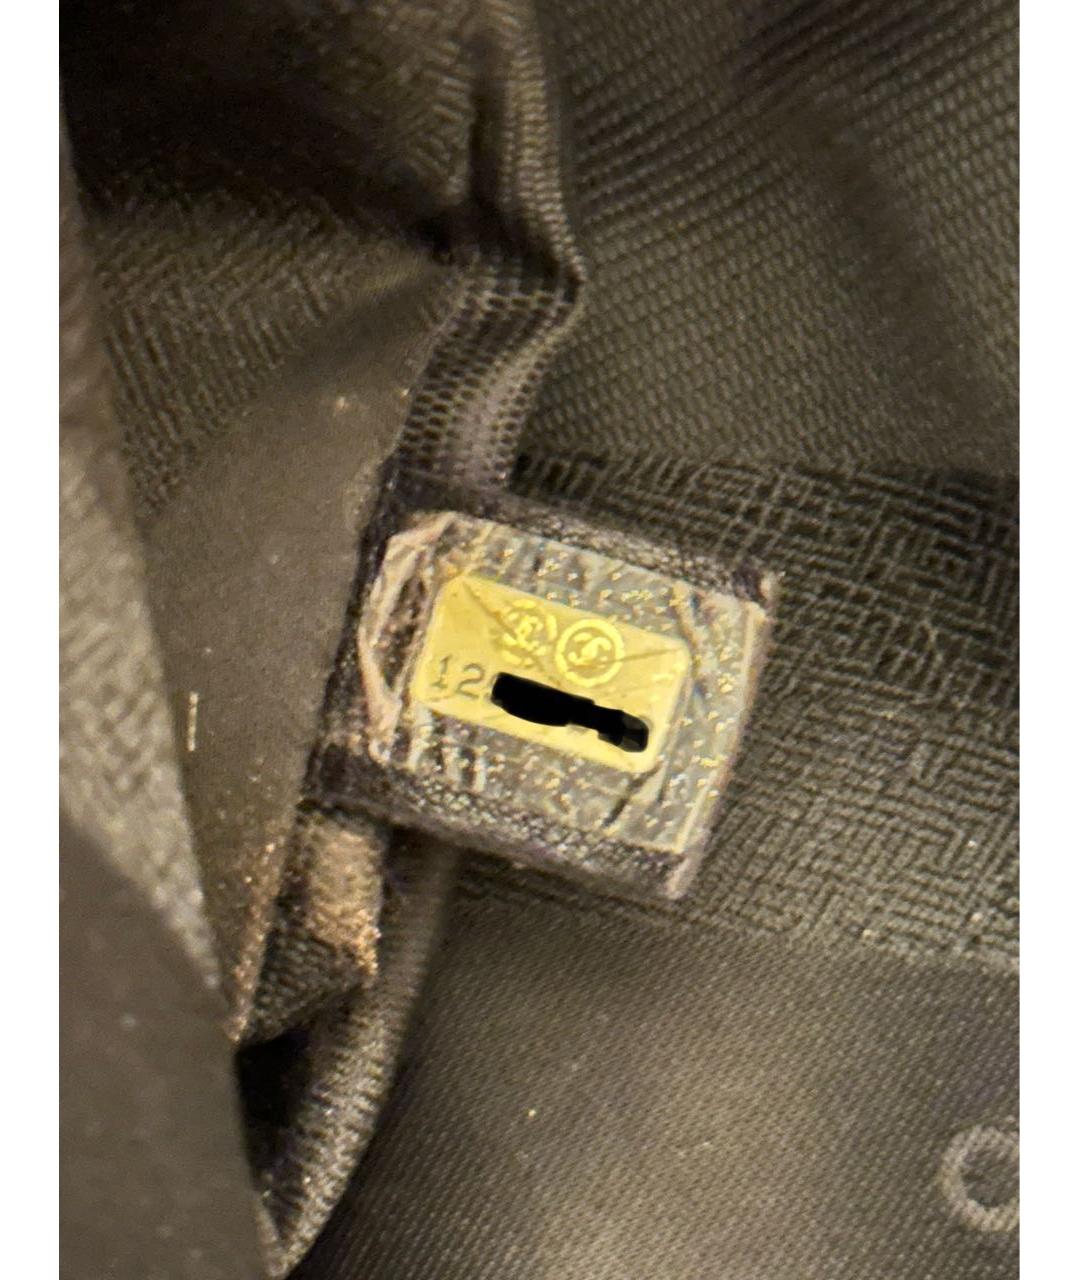 CHANEL PRE-OWNED Черная сумка с короткими ручками из лакированной кожи, фото 2